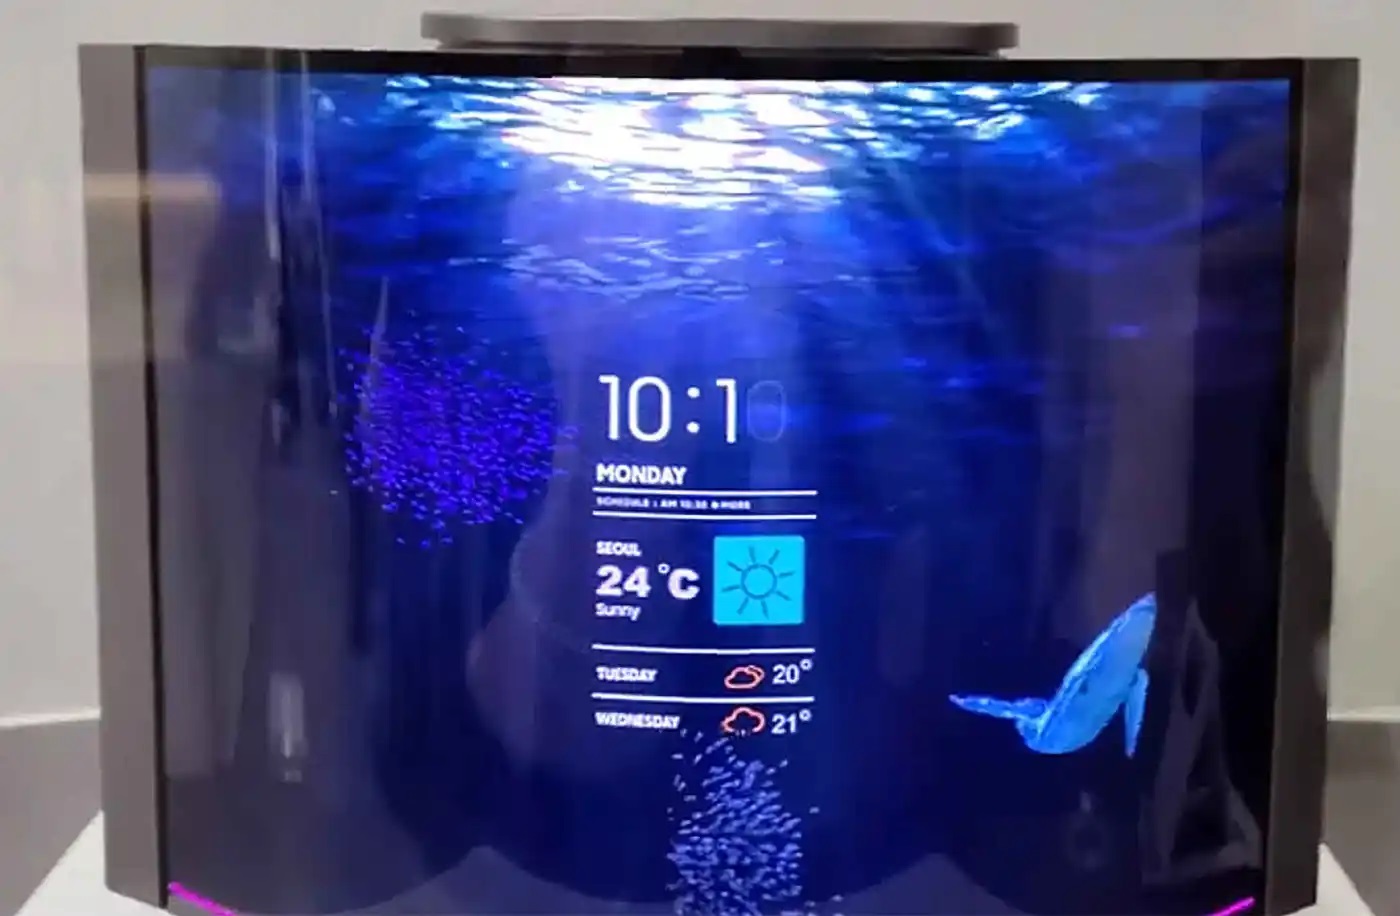 Samsung prezentuje zmieniający kształt inteligentny głośnik z elastycznym 12,4-calowym wyświetlaczem